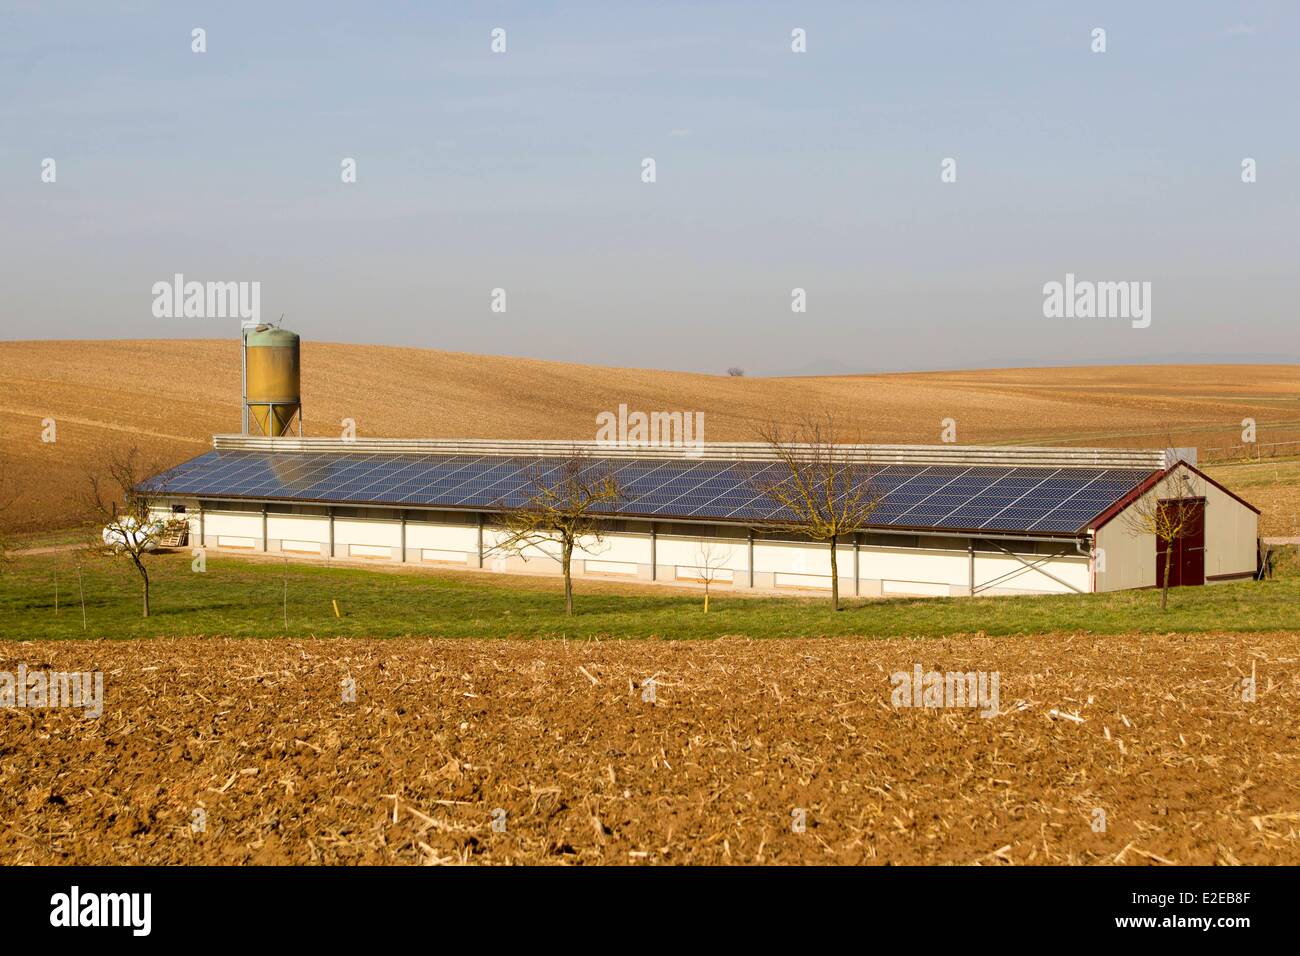 Francia, Bas Rhin, Siegen, la avicultura, la cría de pollos en un edificio cubierto de paneles fotovoltaicos Foto de stock